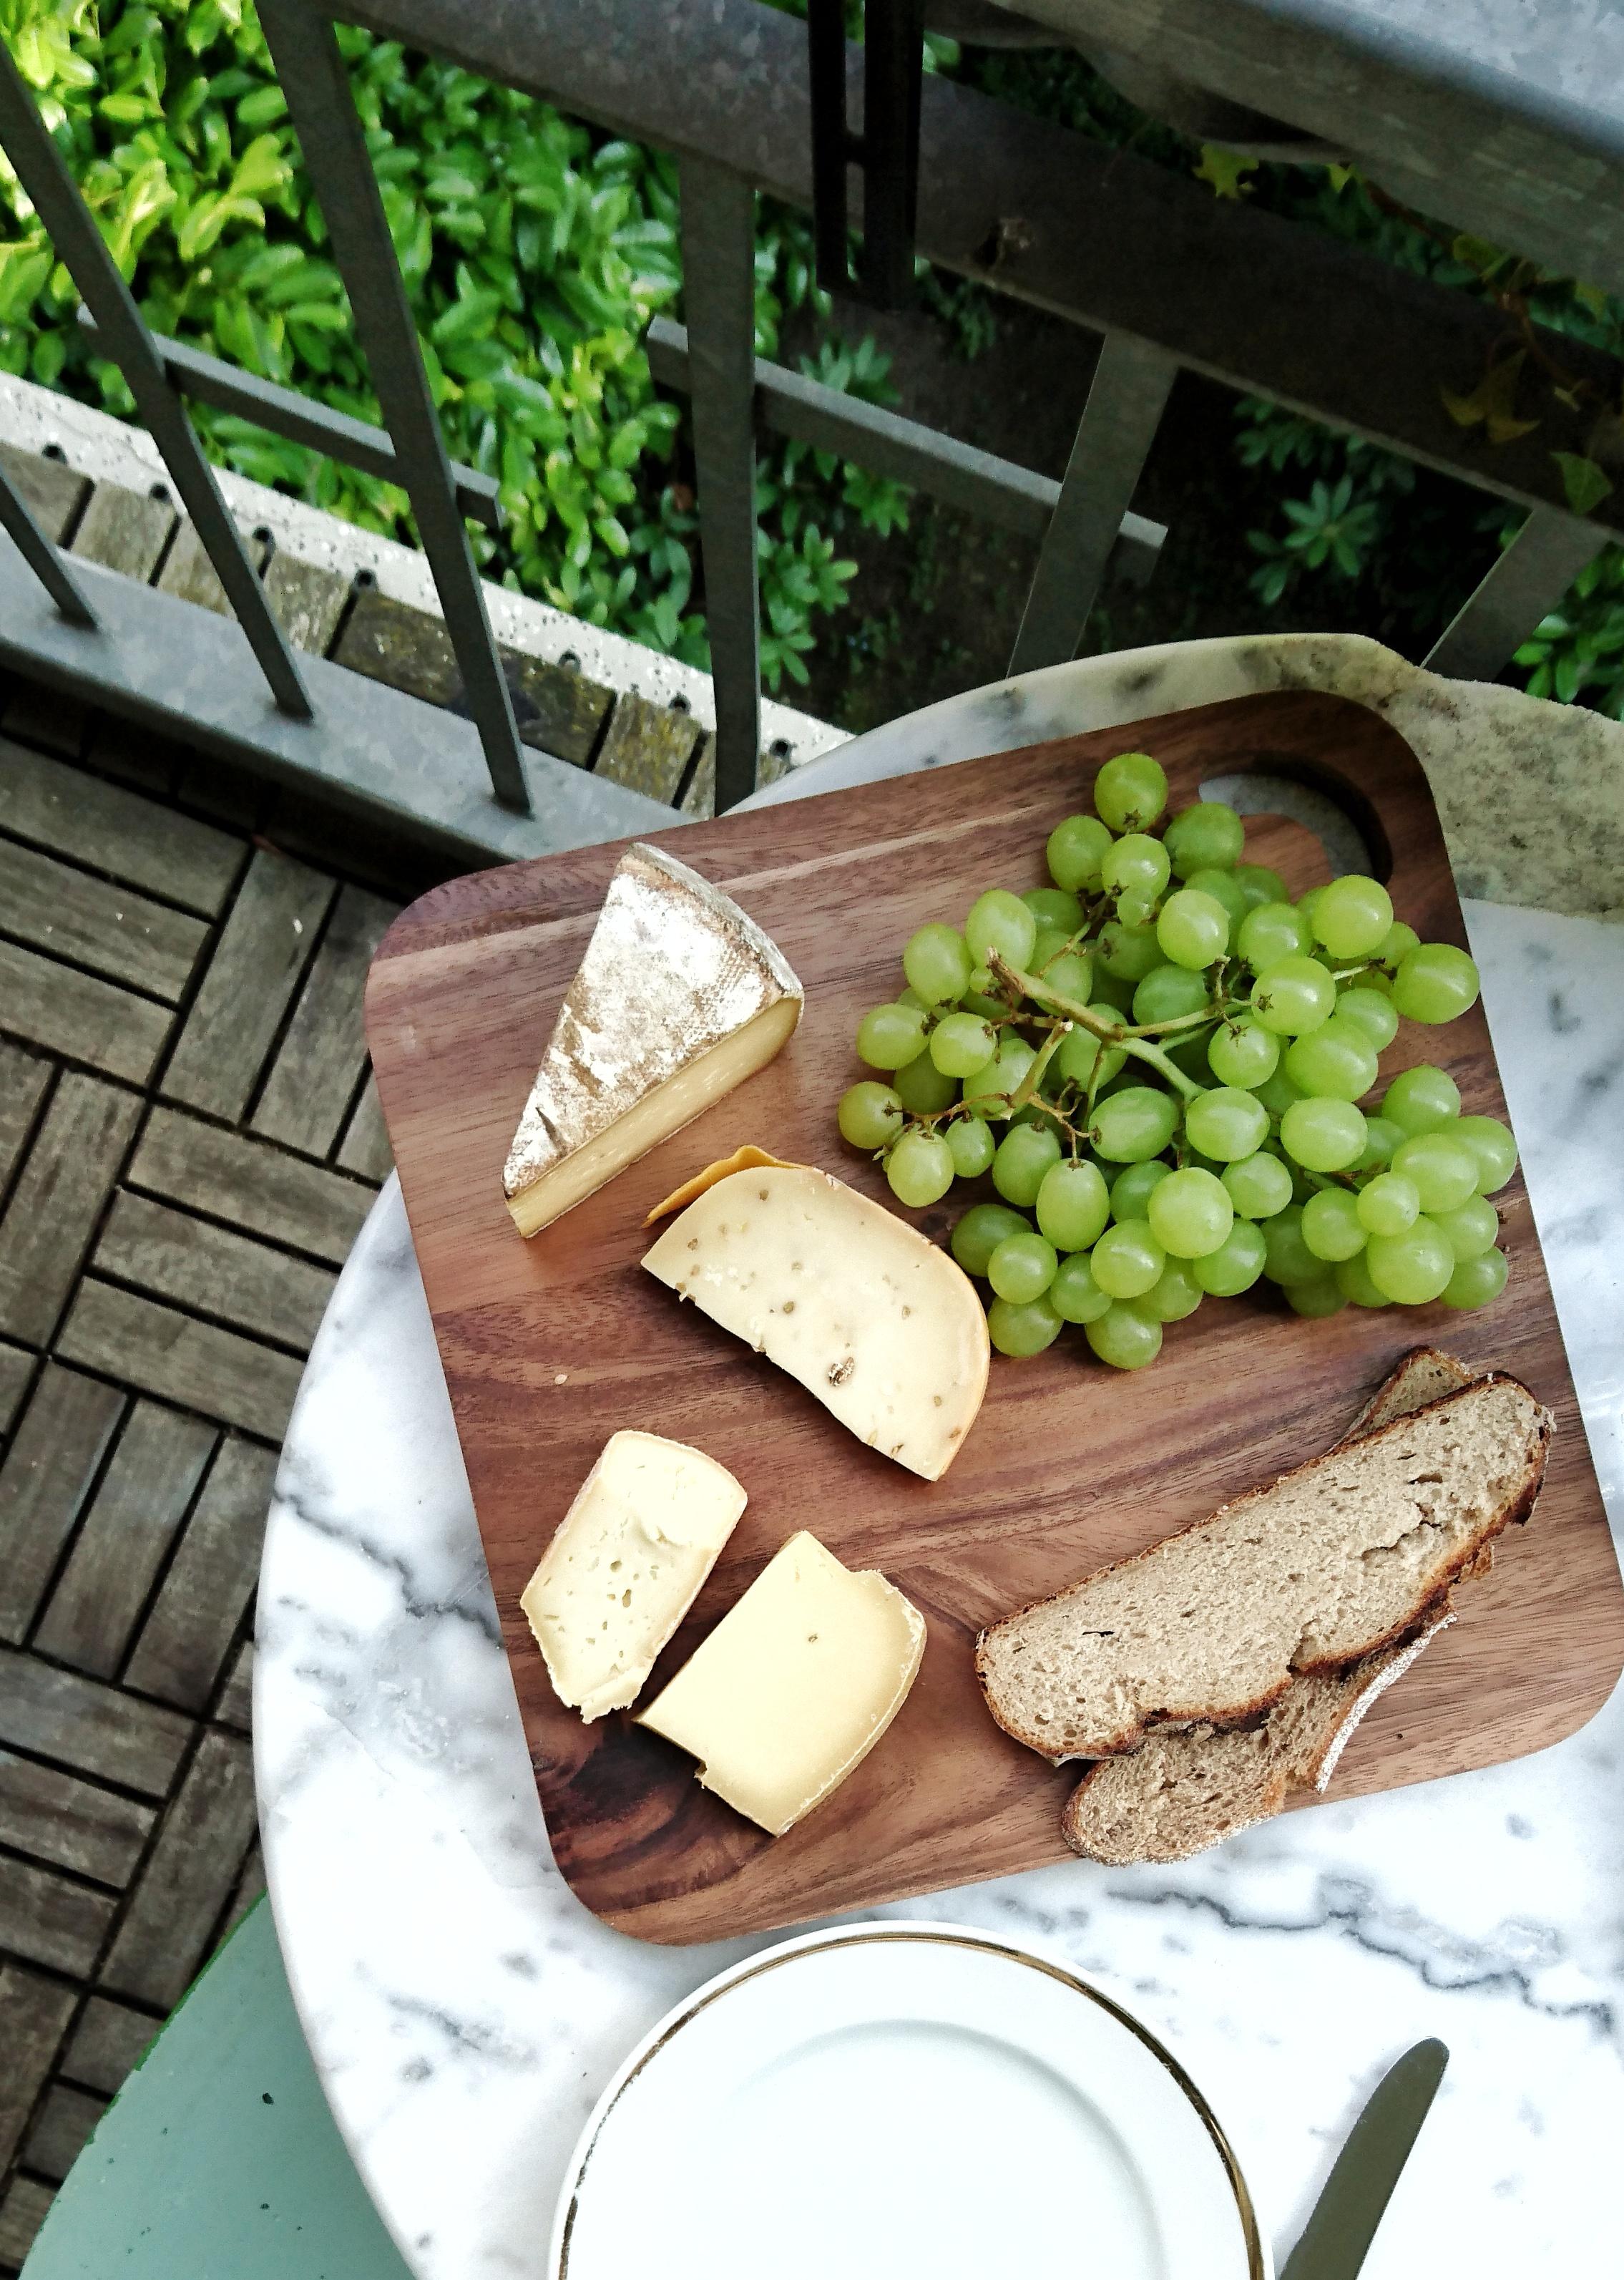 Say cheese! #abendbrot #draußen #balkonien #terrassenplatten